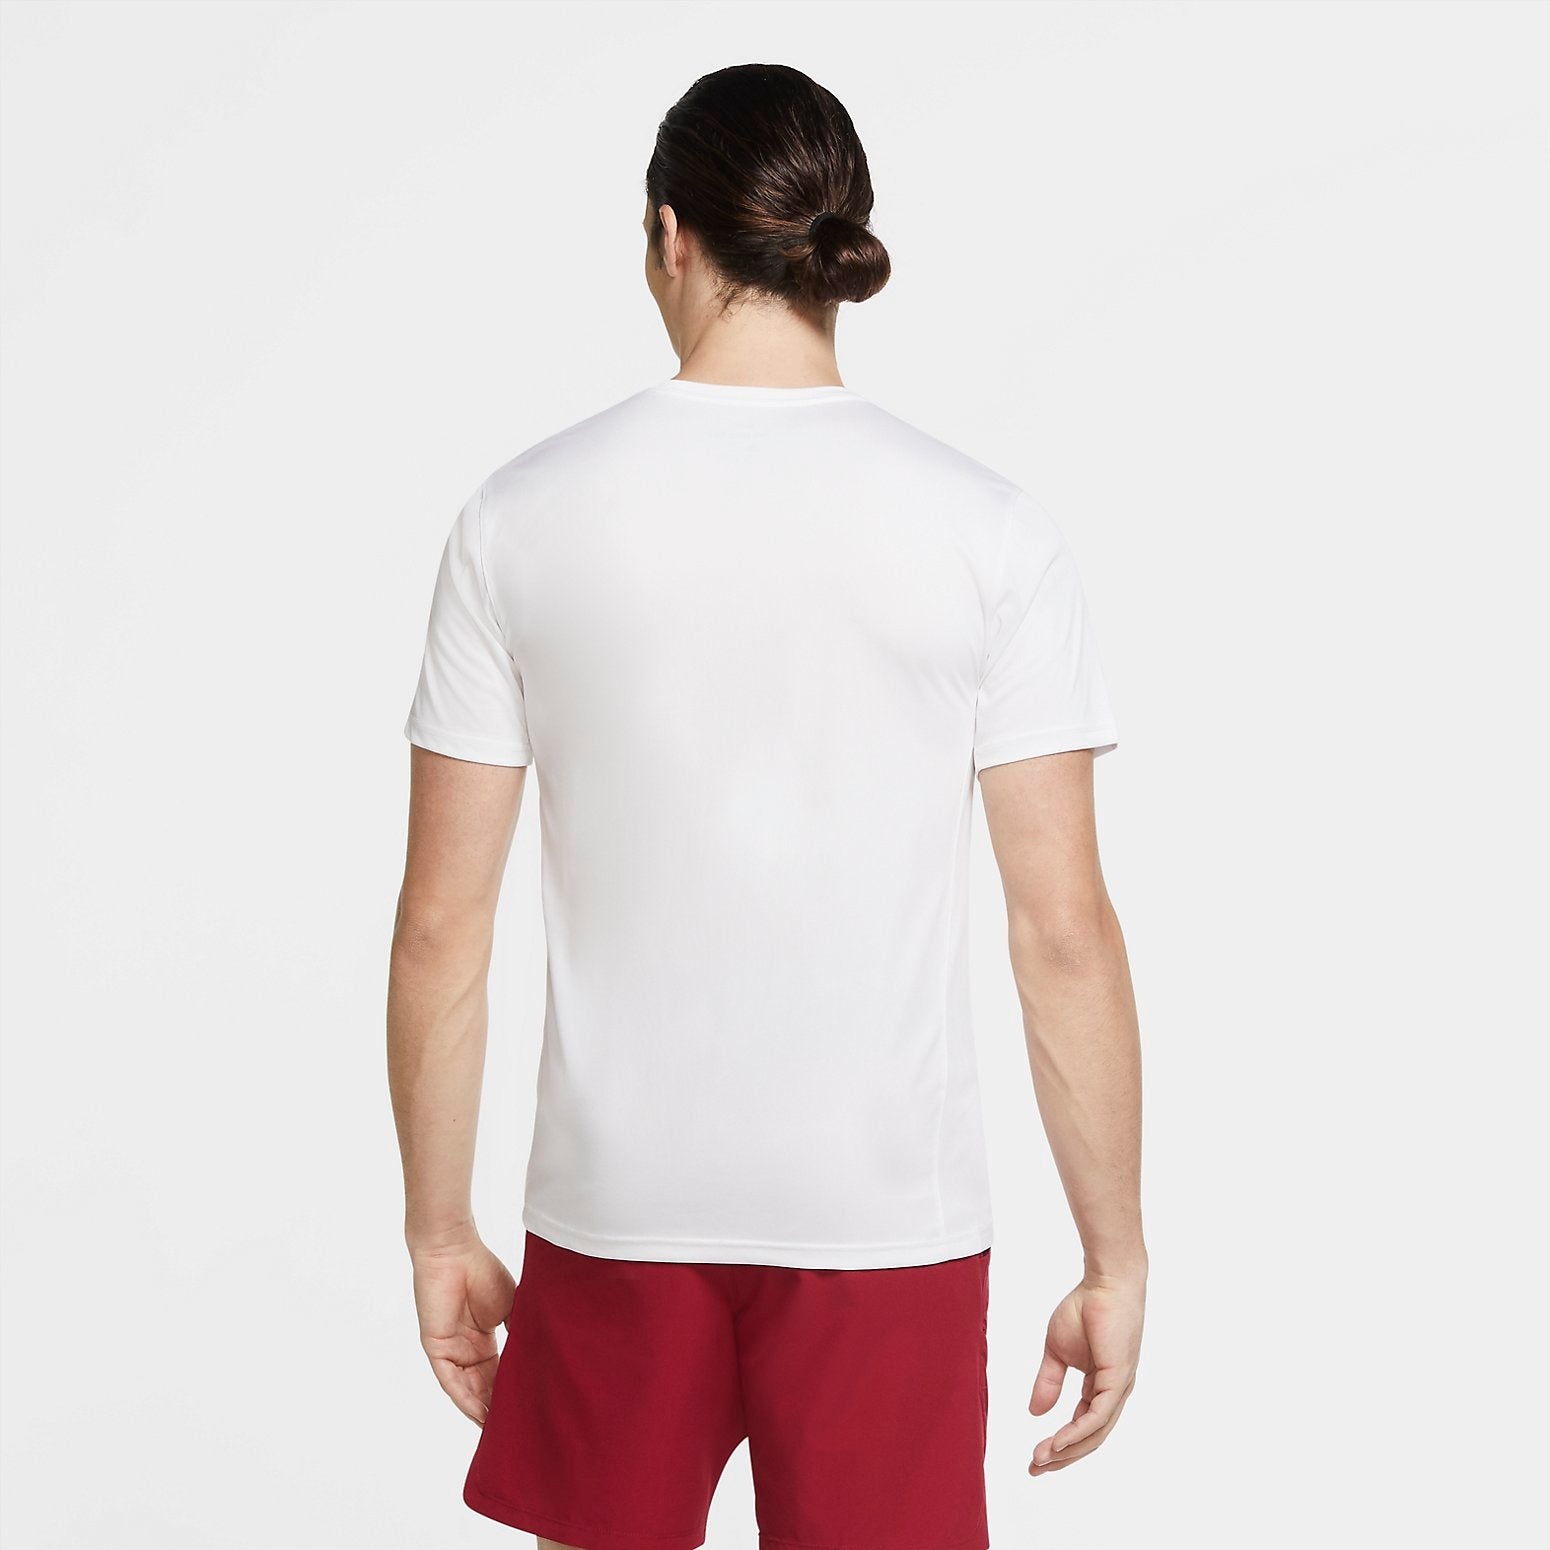 Nike Dri-FIT Legend Training T-shirt 'White' 718834-100 - 2